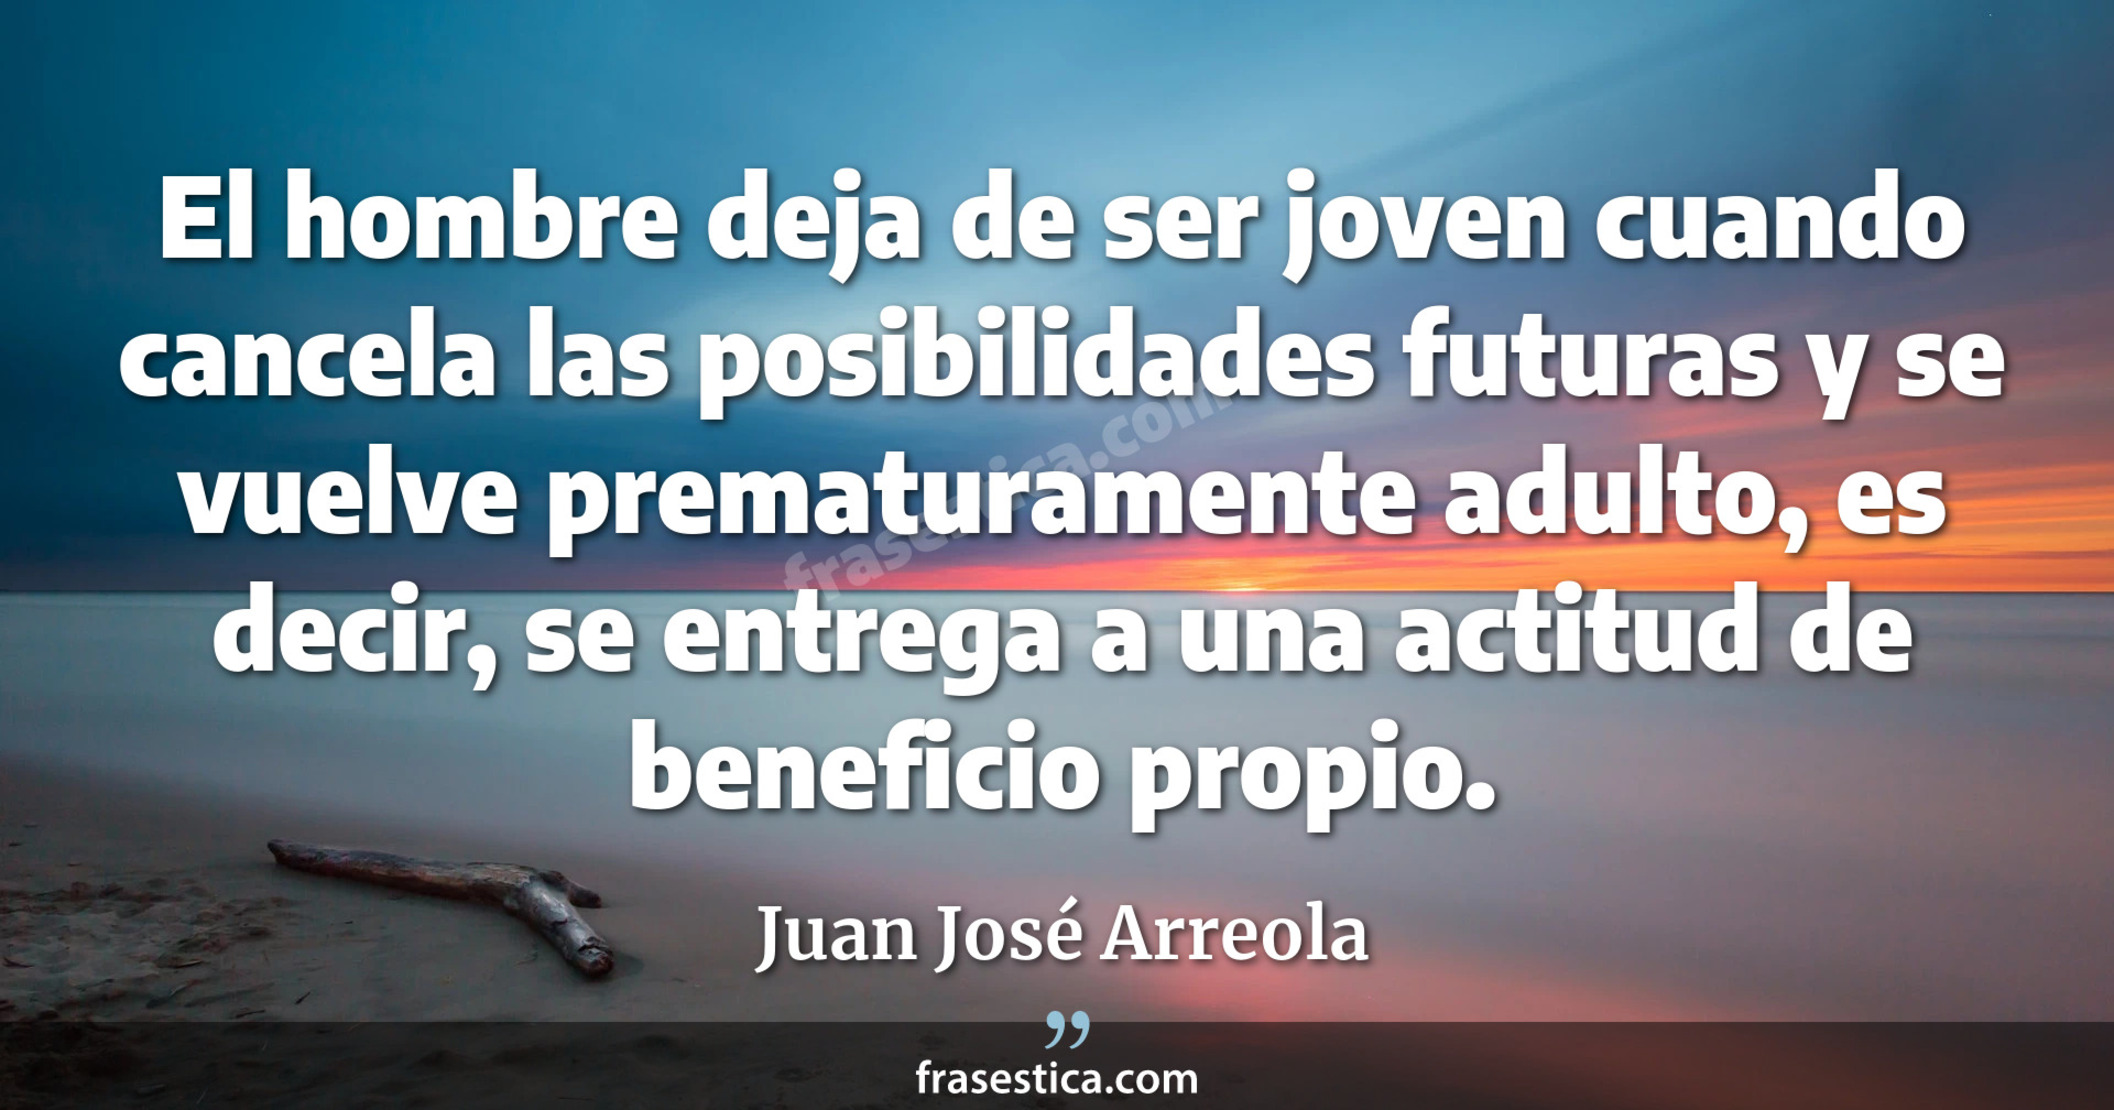 El hombre deja de ser joven cuando cancela las posibilidades futuras y se vuelve prematuramente adulto, es decir, se entrega a una actitud de beneficio propio. - Juan José Arreola